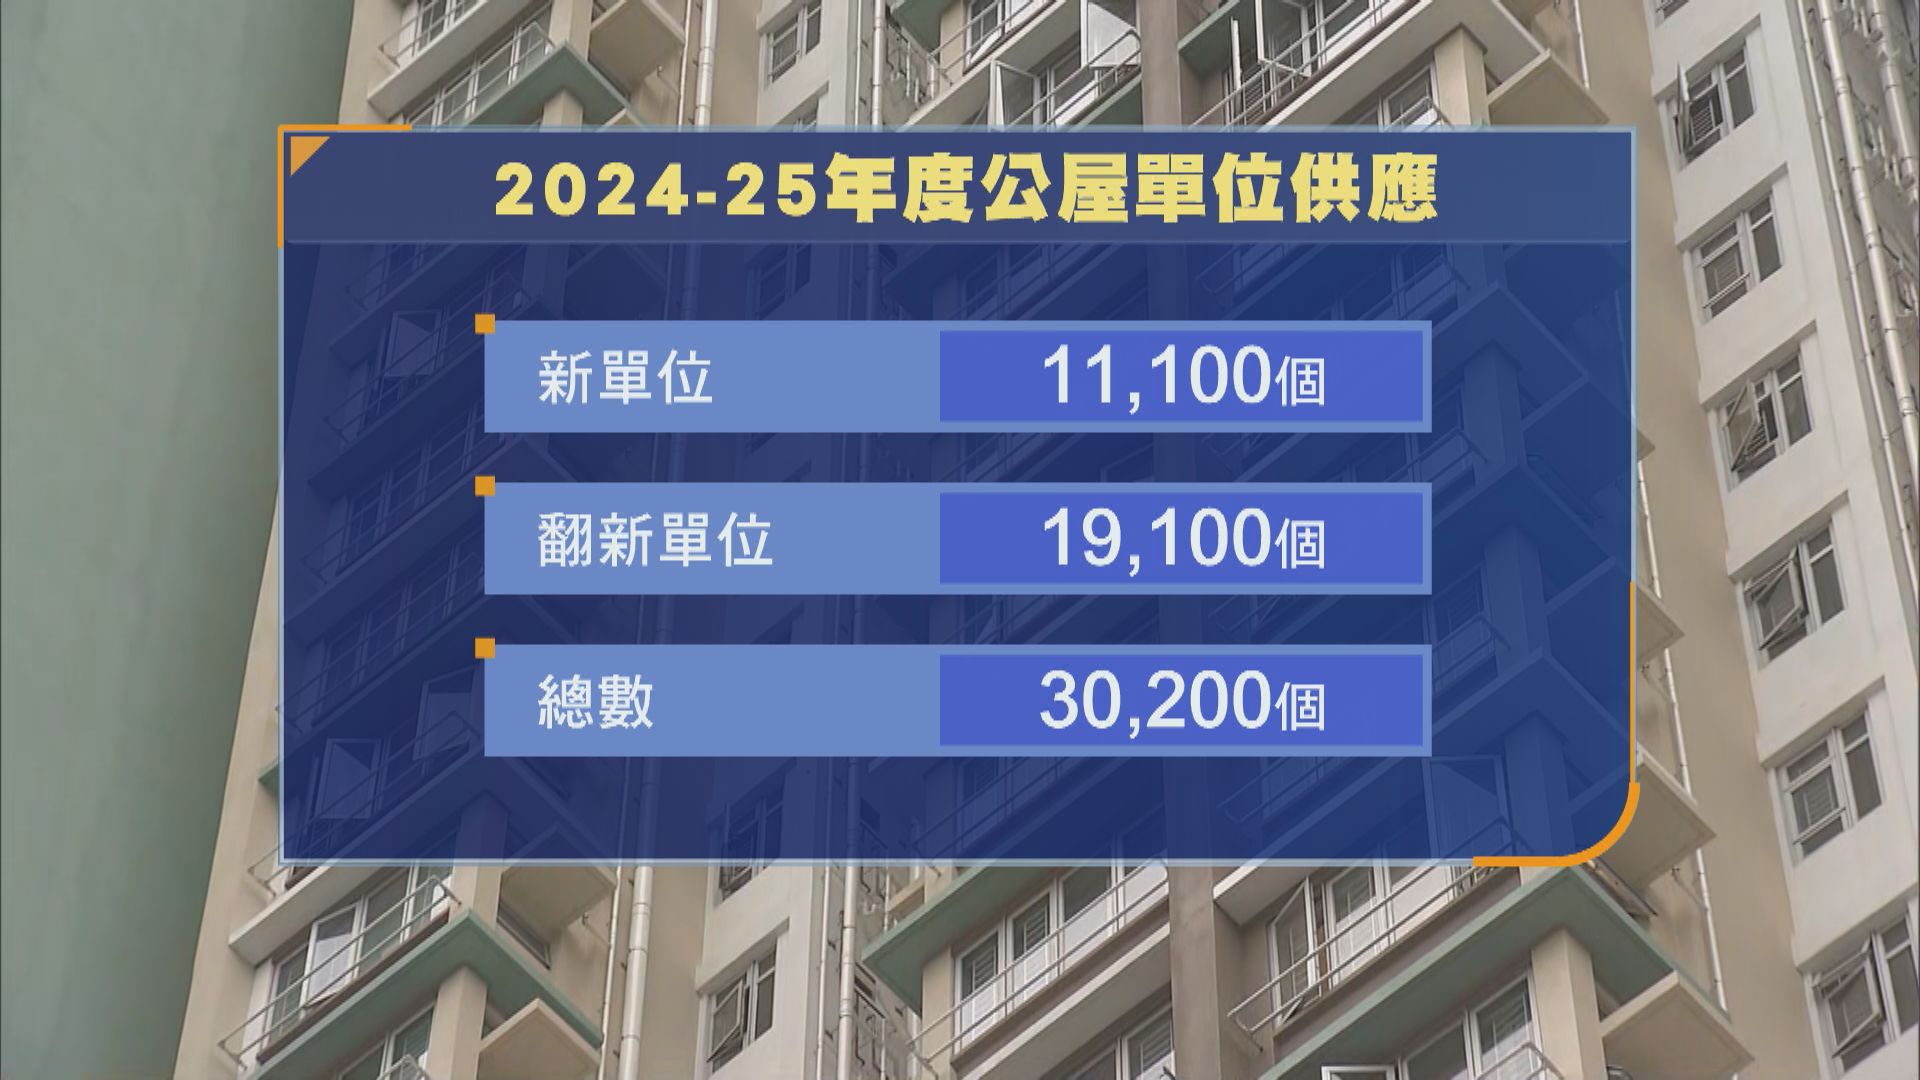 據了解2024至25年度可供編配公屋單位估計有30200個